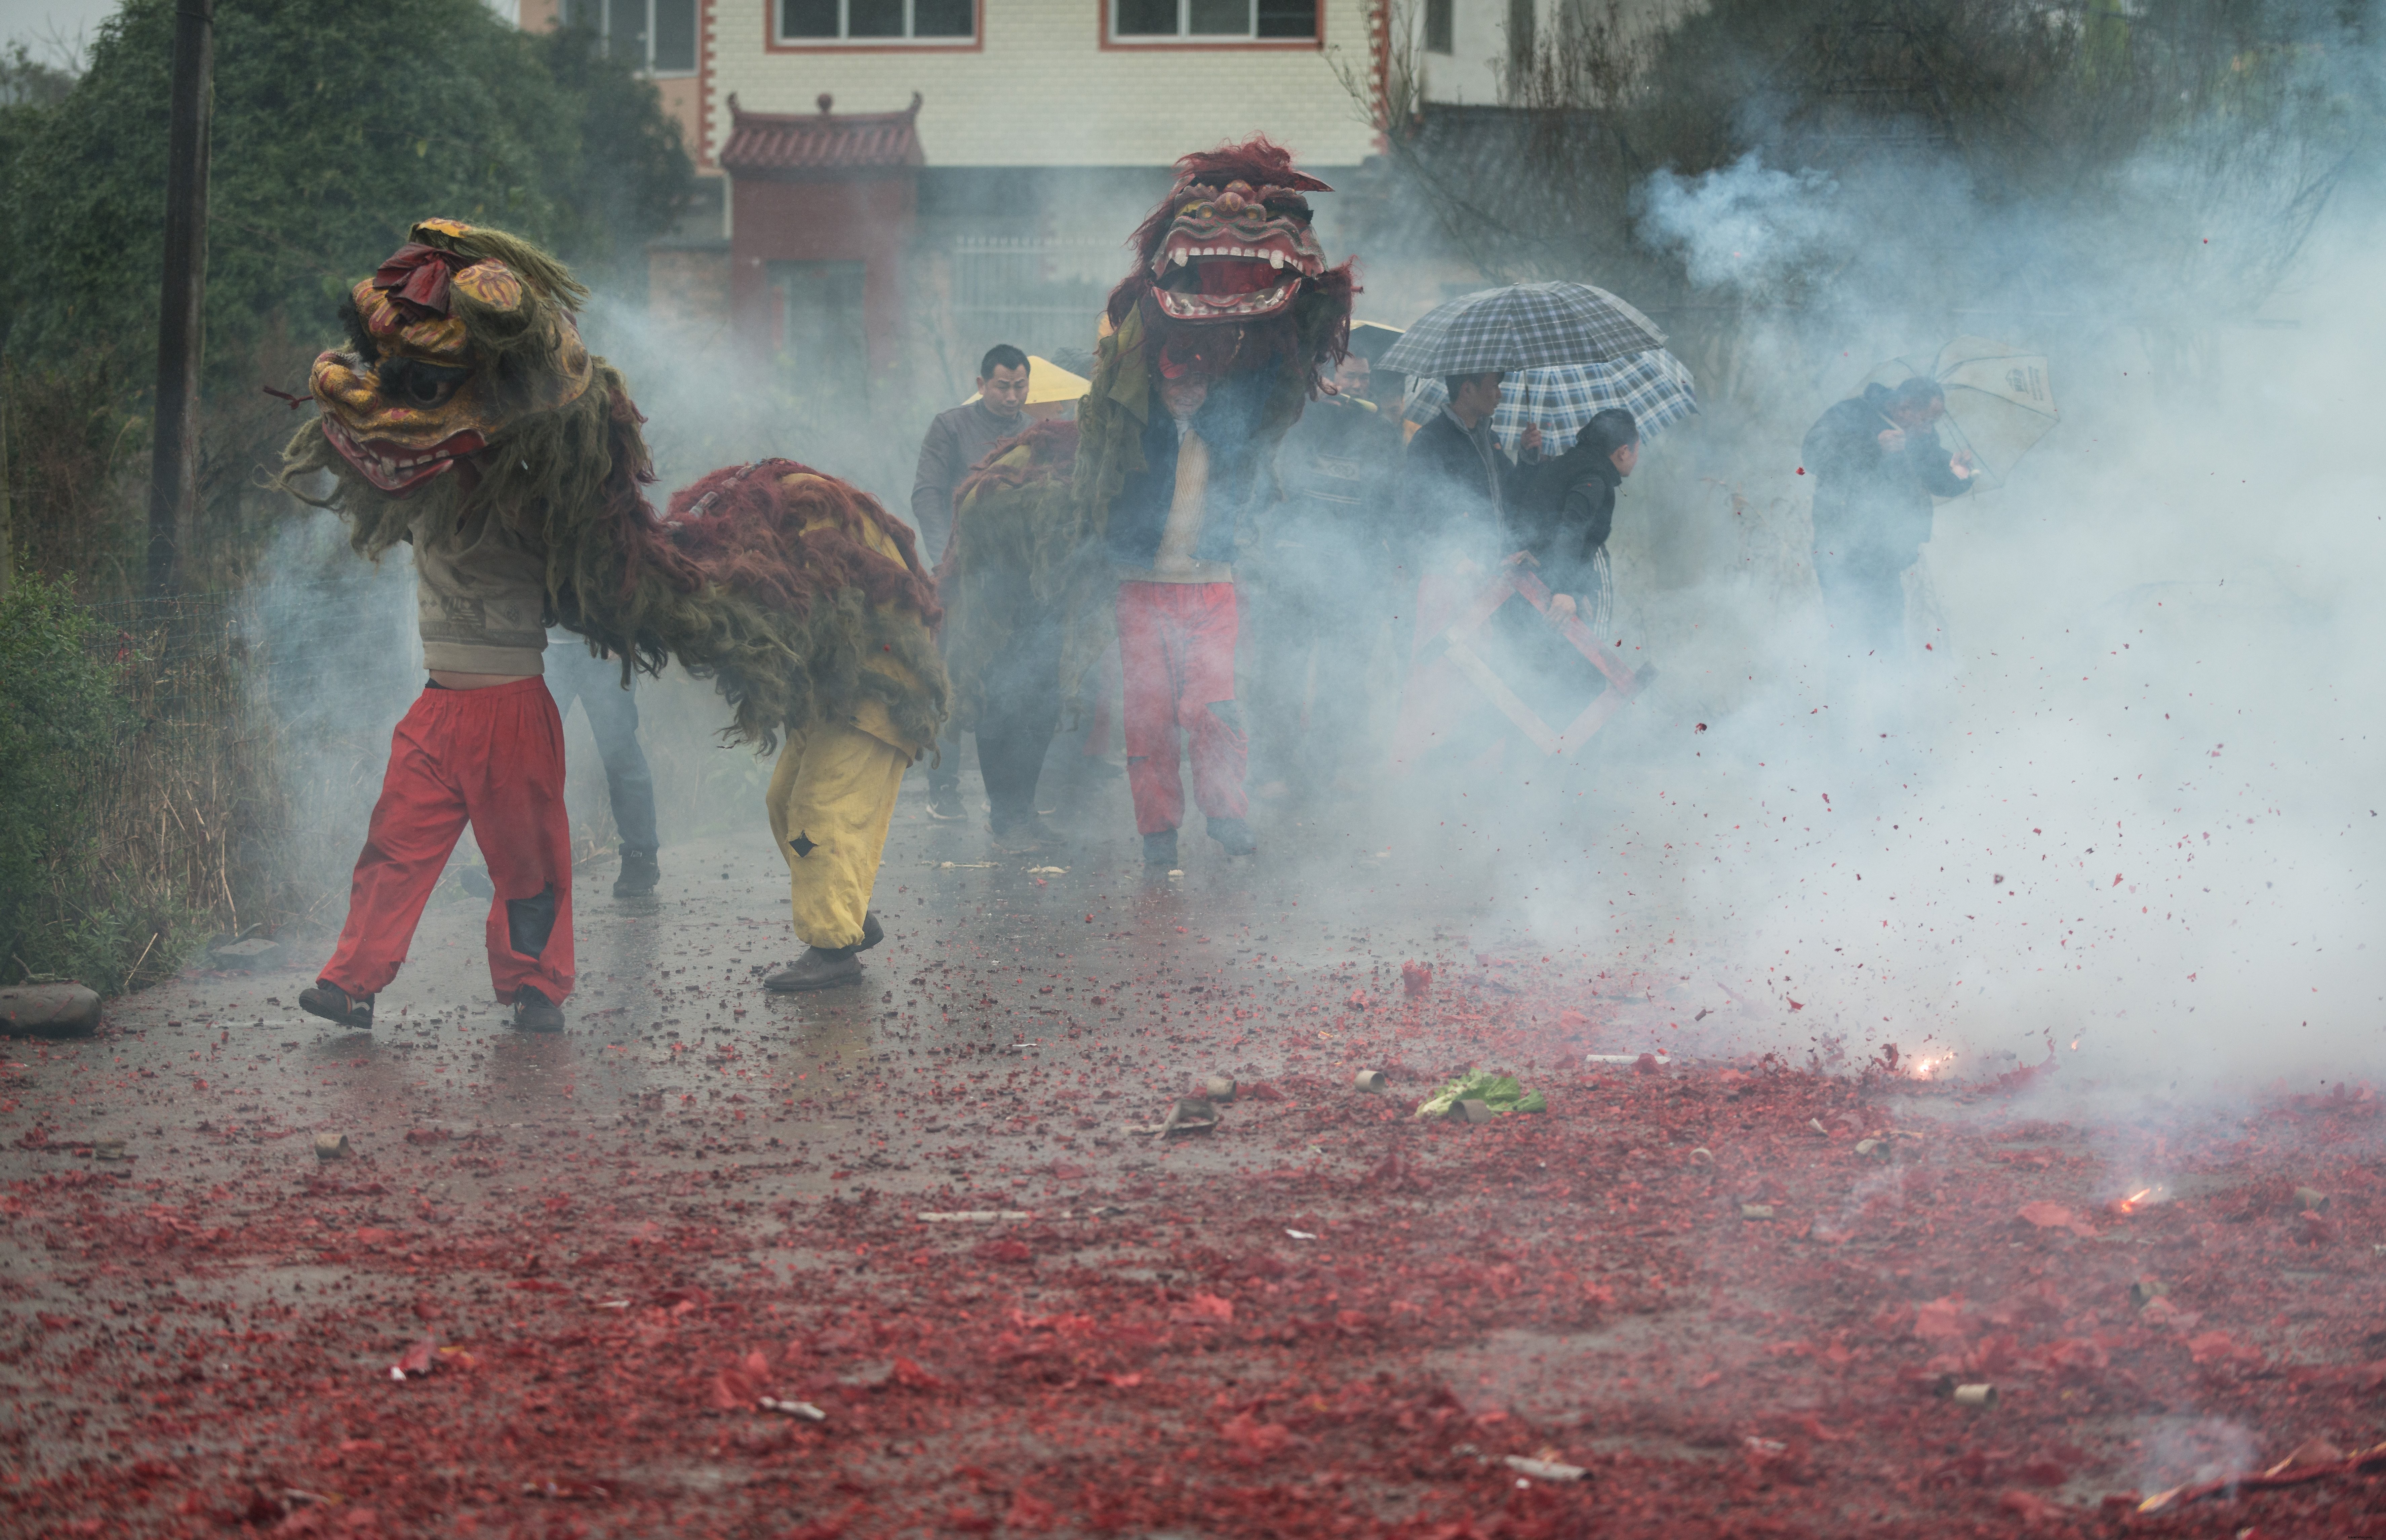 布ドラゴンの写真で霧の街を歩いている人々 